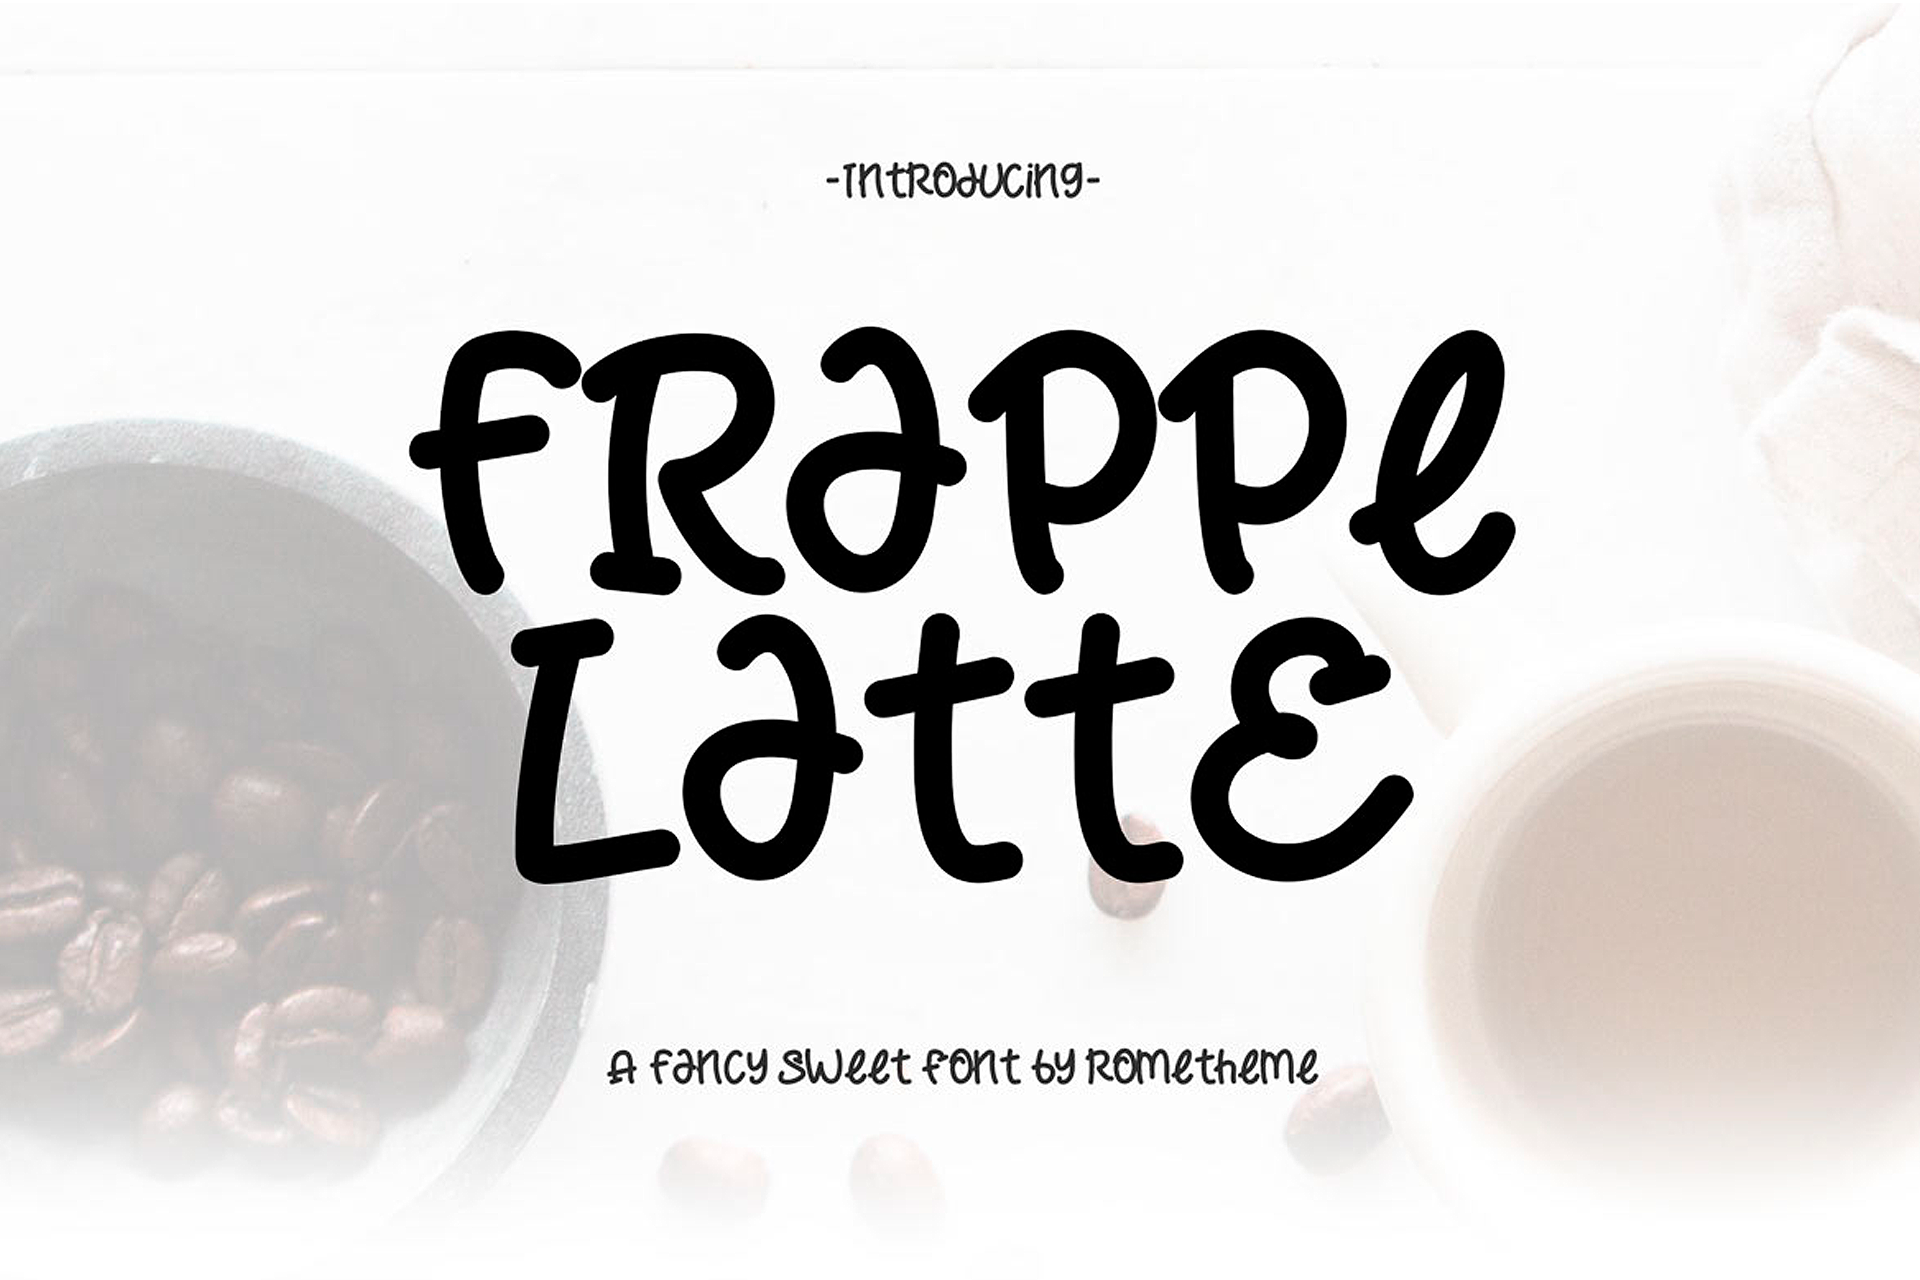 Frappe Latte Font